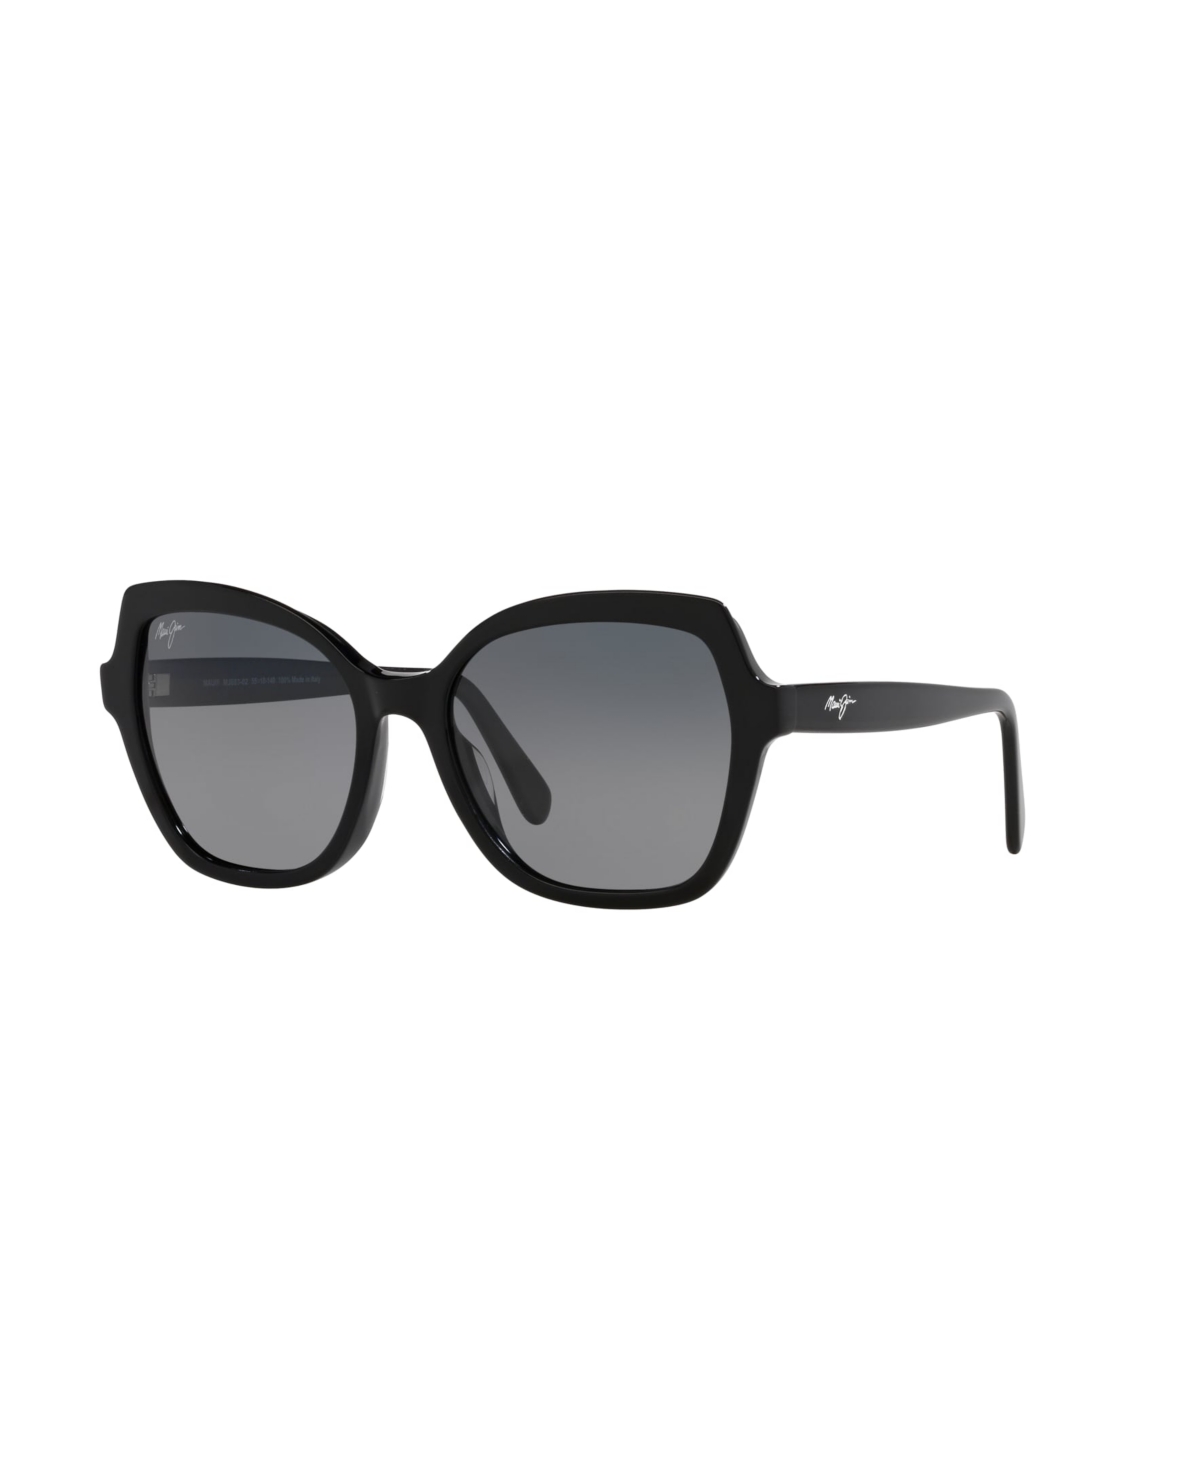 Maui Jim Women's Polarized Sunglasses, Mamane Mj000739 In Black Shiny